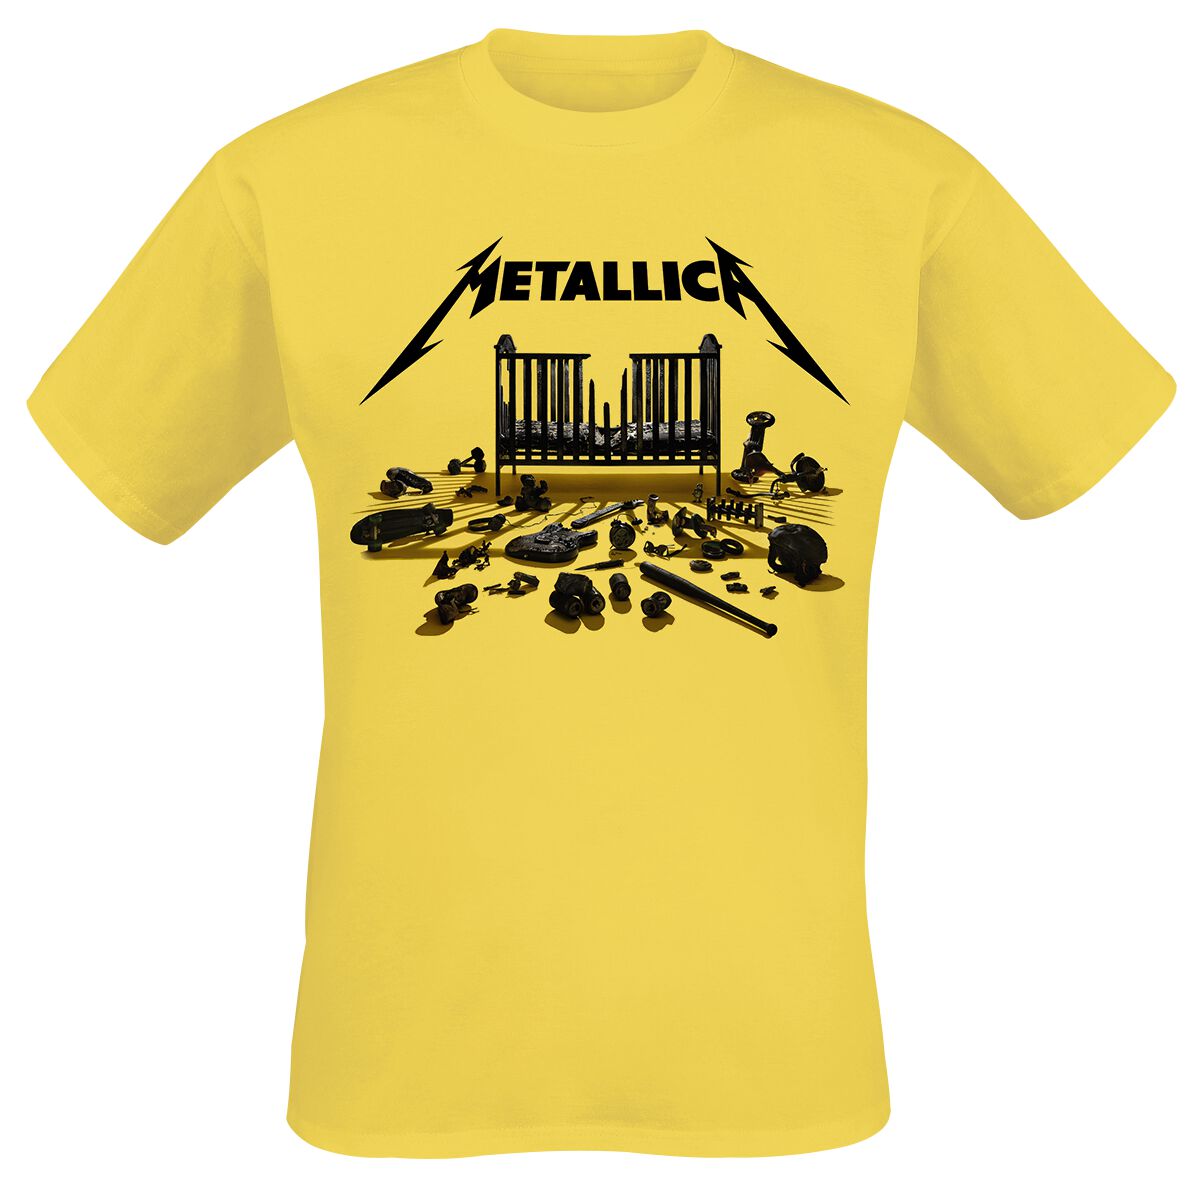 Metallica T-Shirt - Simplified Cover (M72) - S bis 3XL - für Männer - Größe XL - gelb  - Lizenziertes Merchandise!